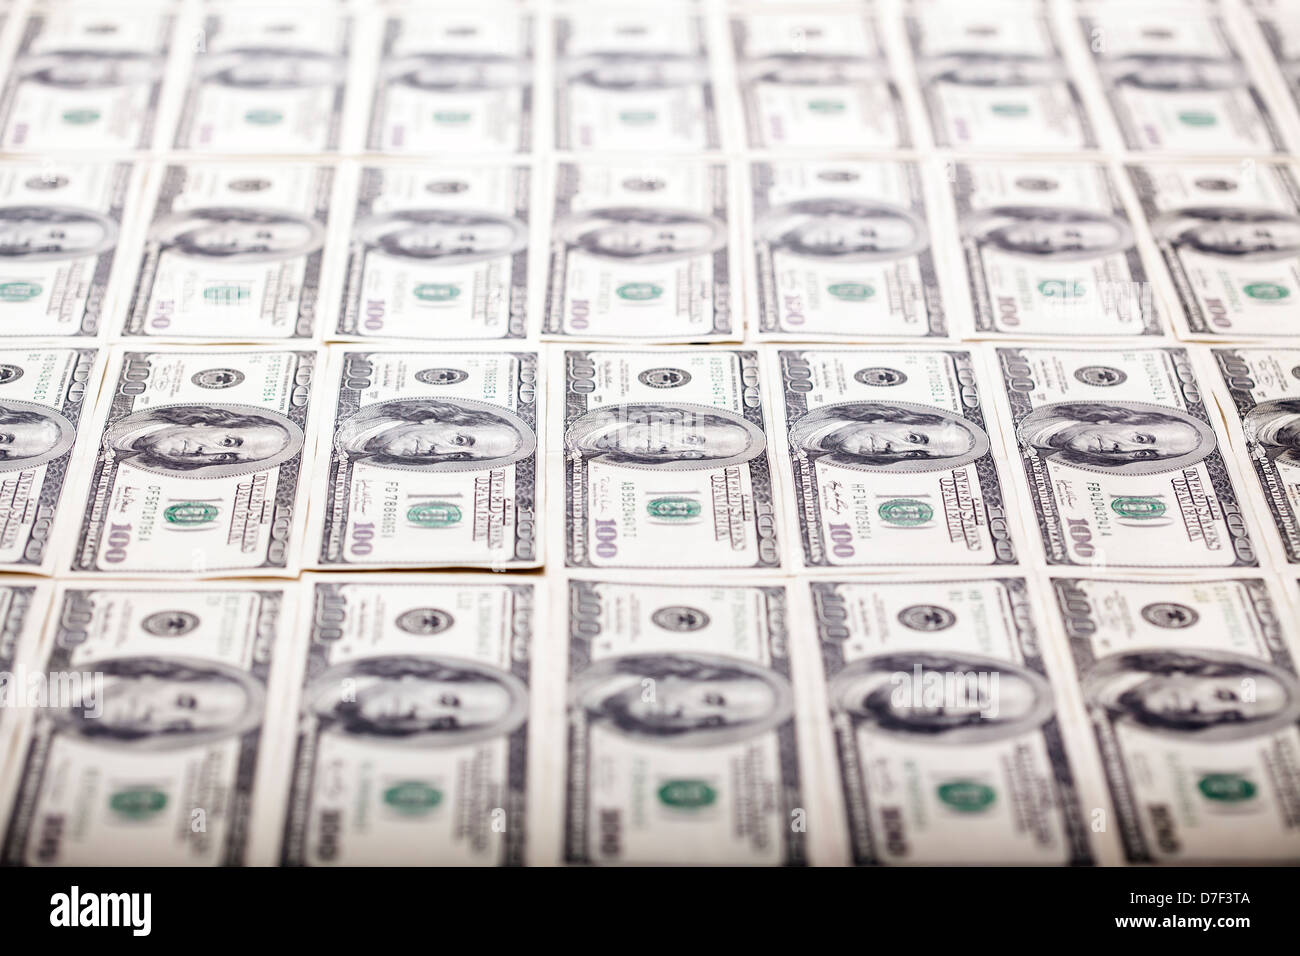 Eine große Menge von 100 US$ Geld Noten in Reihen aufgestellt. Sehr geringe Schärfentiefe. Stockfoto